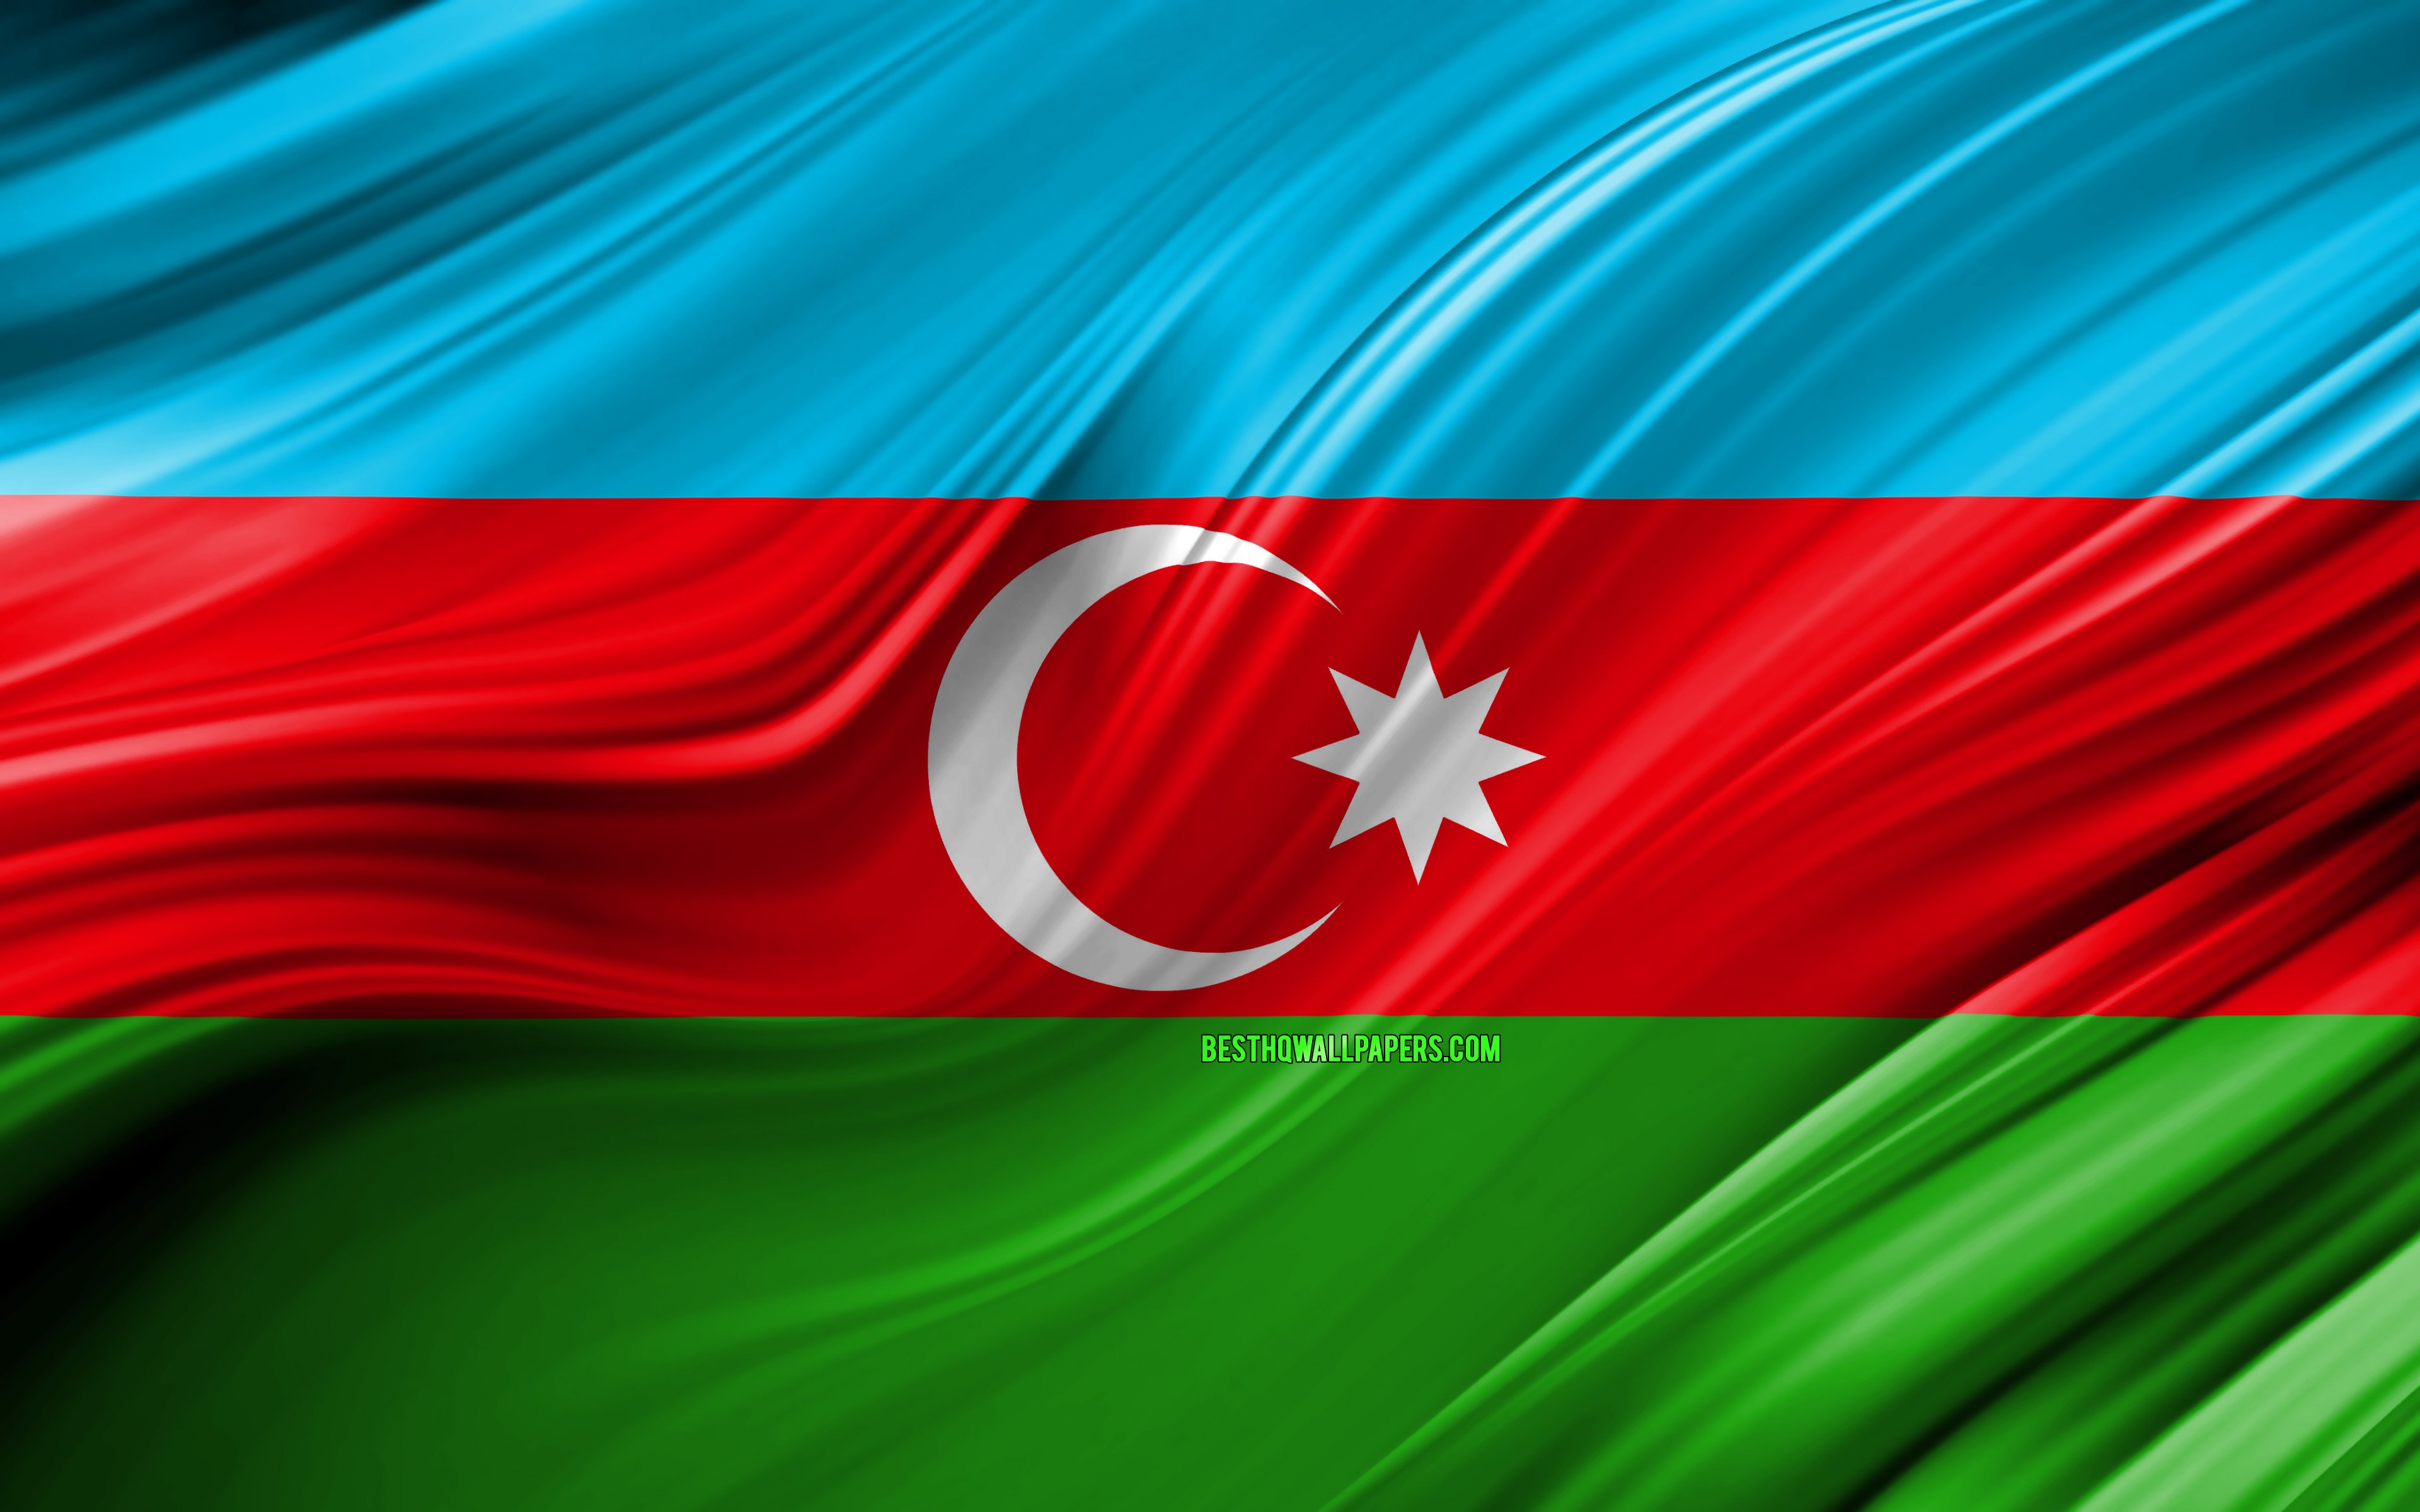 Azeri indir